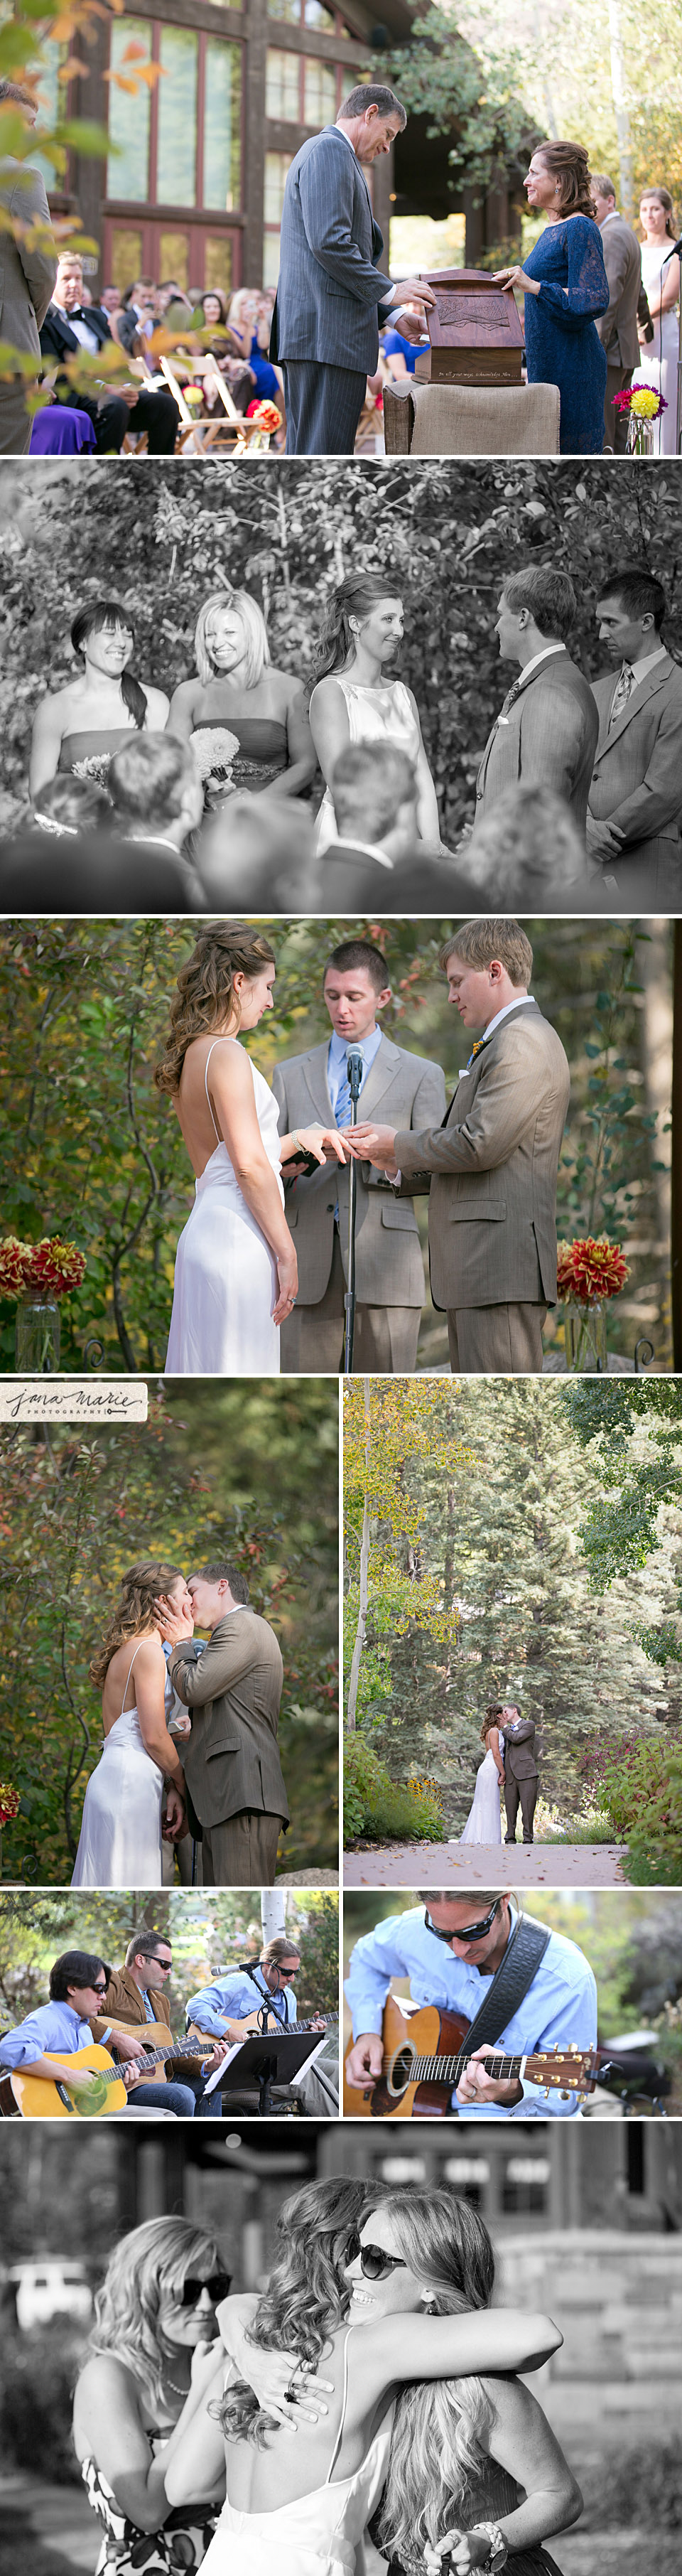 Ceremonies, bride and groom, DIY flowers, Denver weddings, Jana Marler